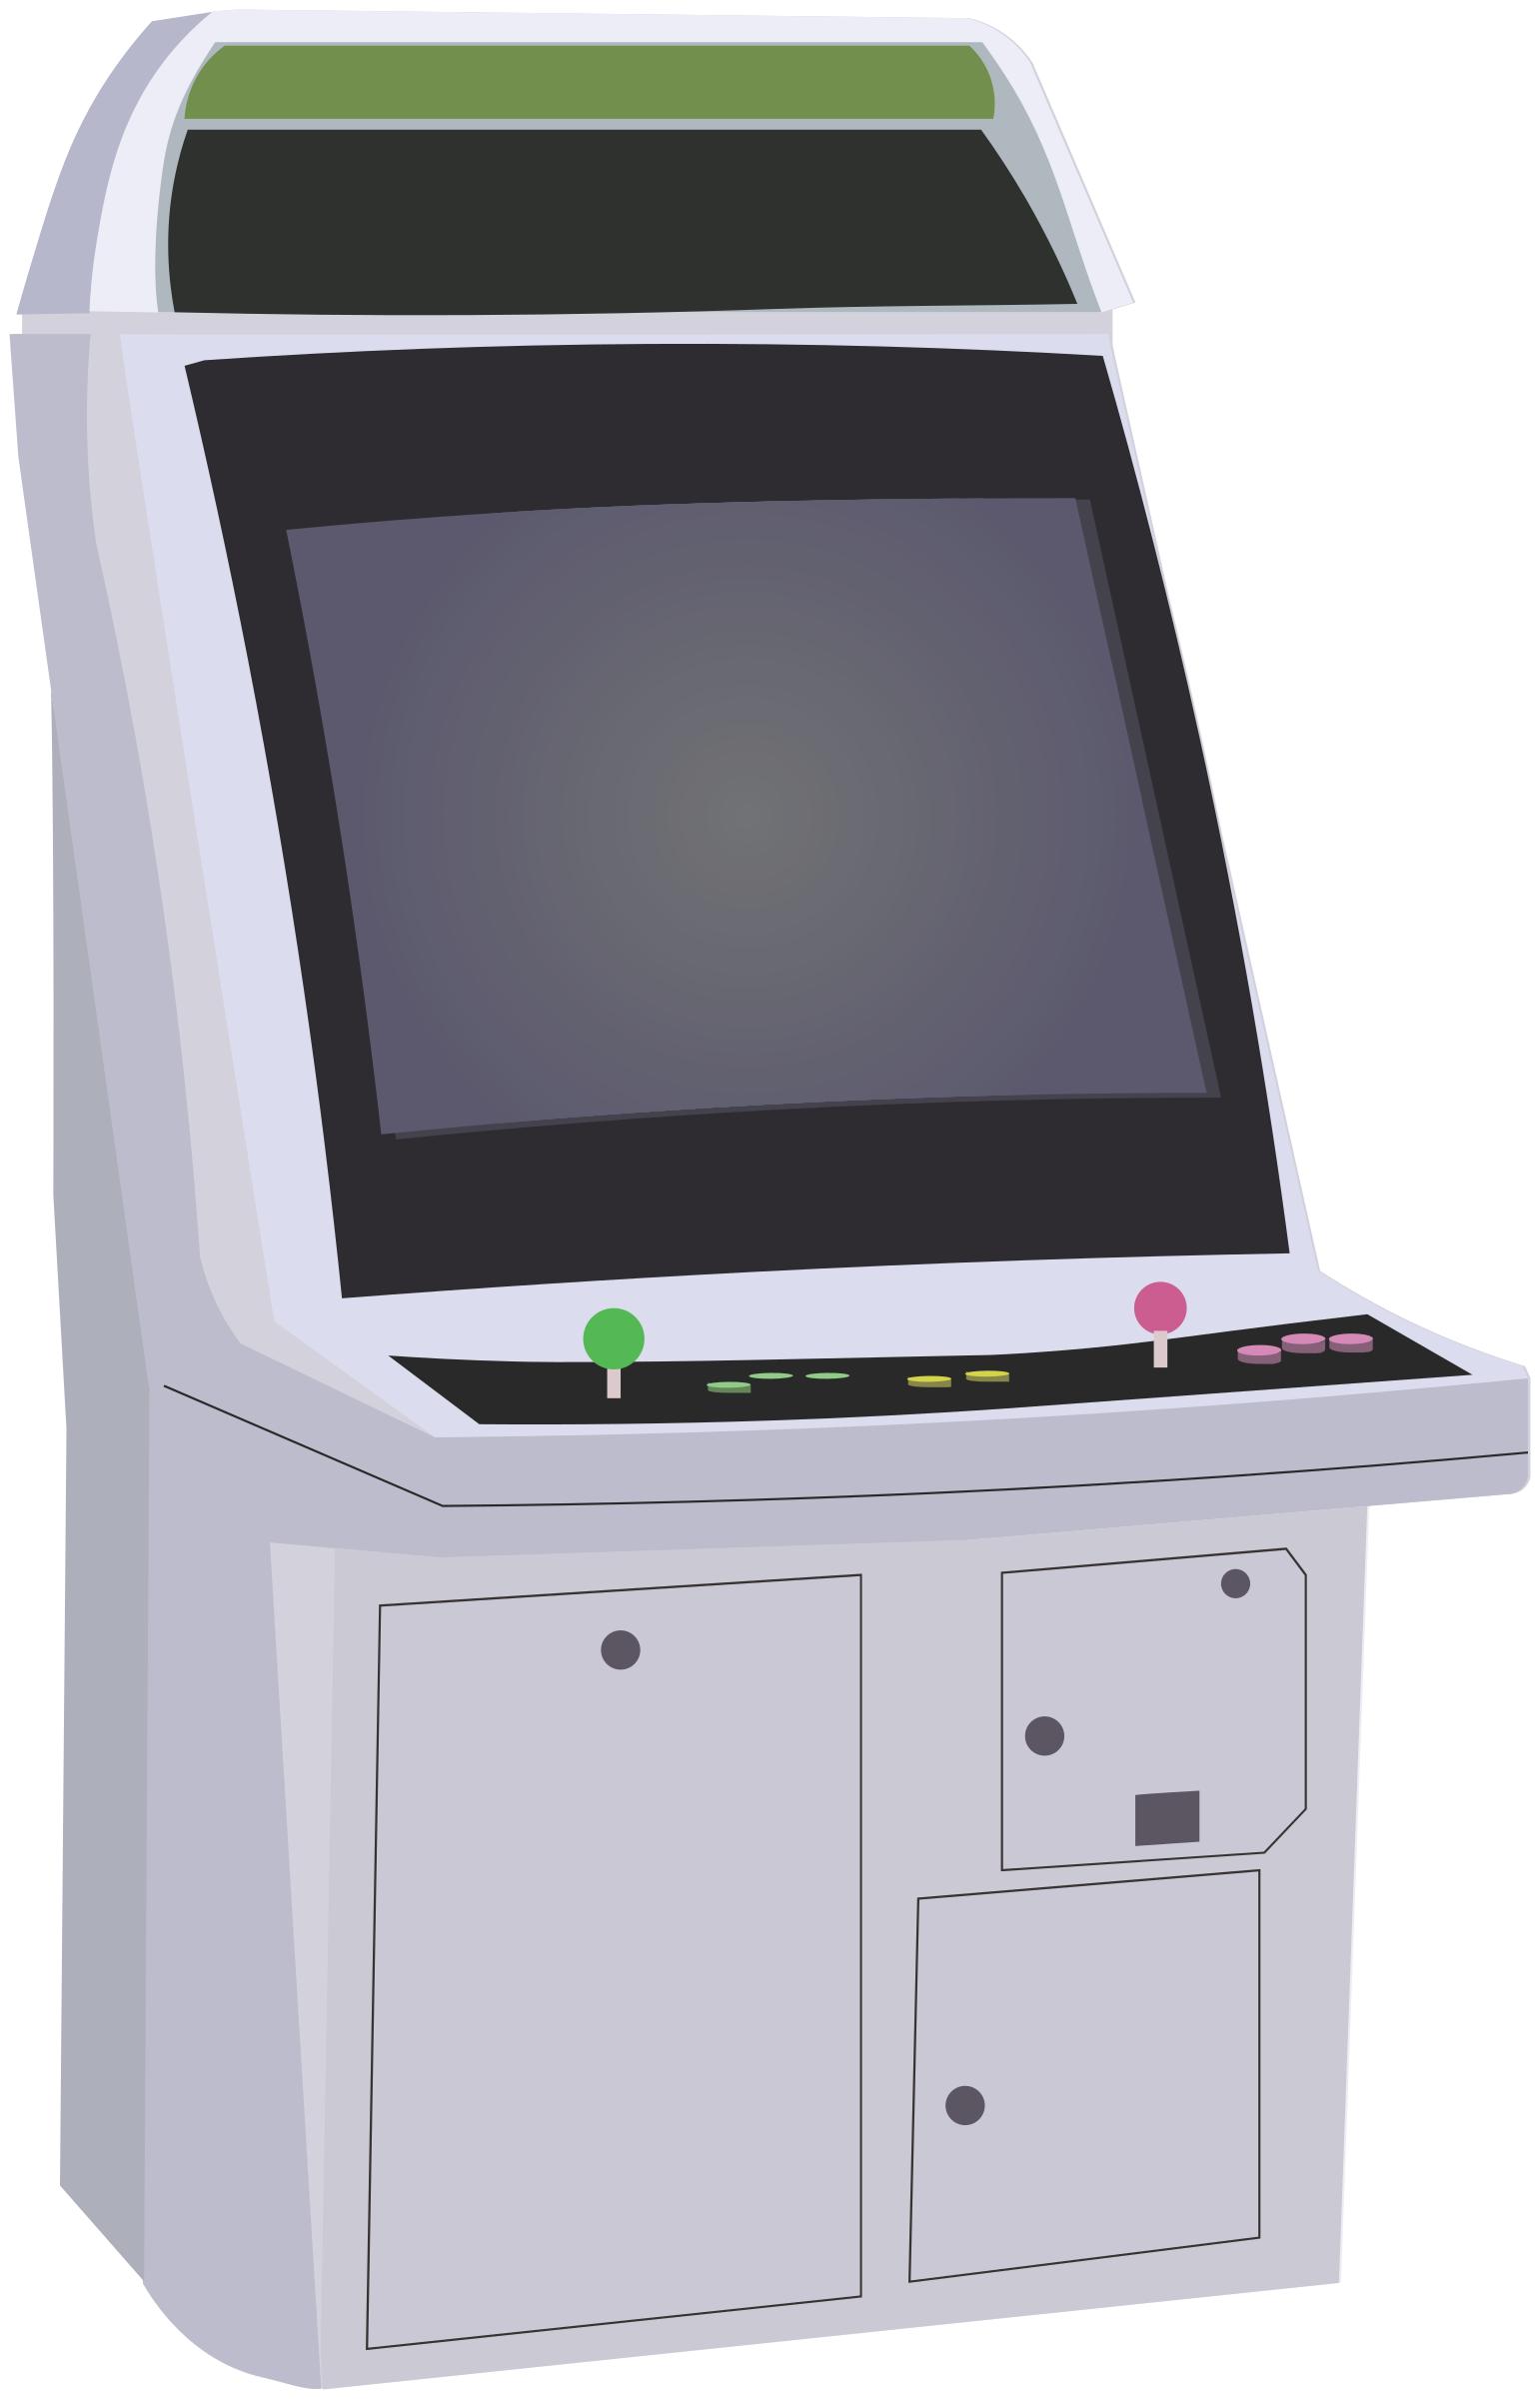 arcade clipart arcade screen